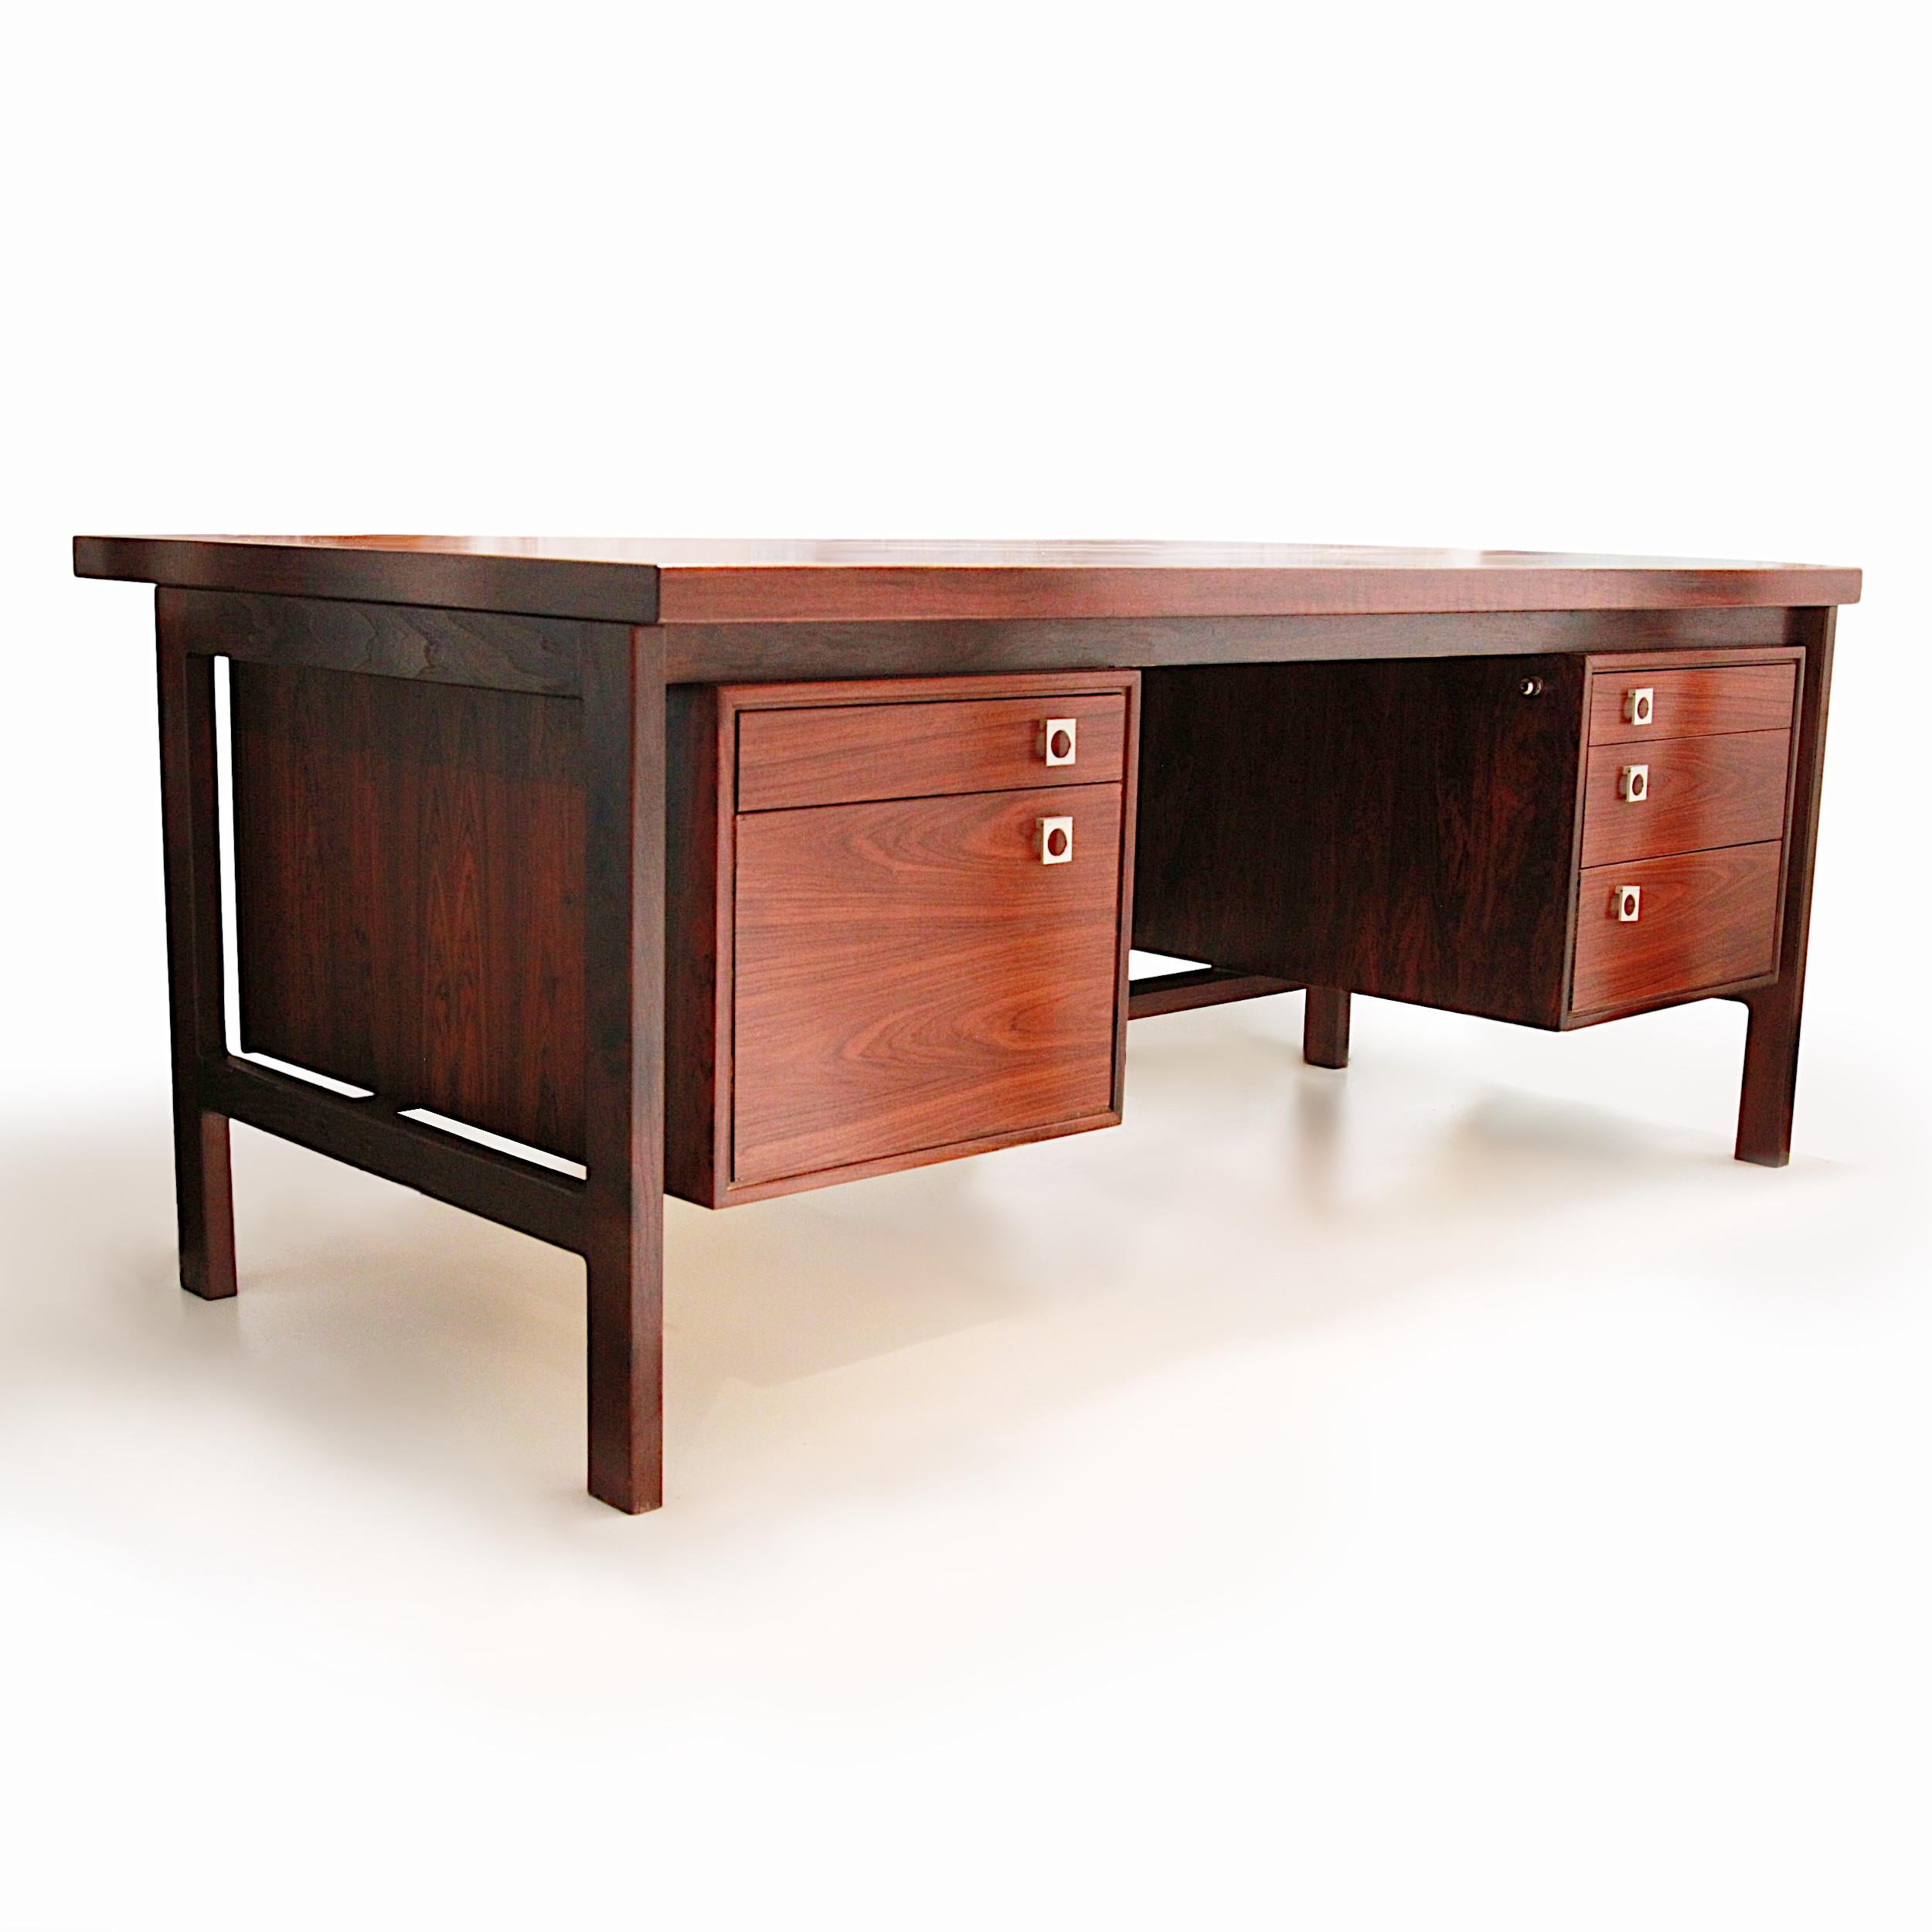 Dies ist ein wunderbarer Schreibtisch, der von Arne Vodder für den dänischen Möbelhersteller H.P. entworfen wurde. Hansen. 

Merkmale des Schreibtisches:

- Buchgefertigtes Palisanderfurnier
- Rahmen aus massivem Palisanderholz
- Hardware aus